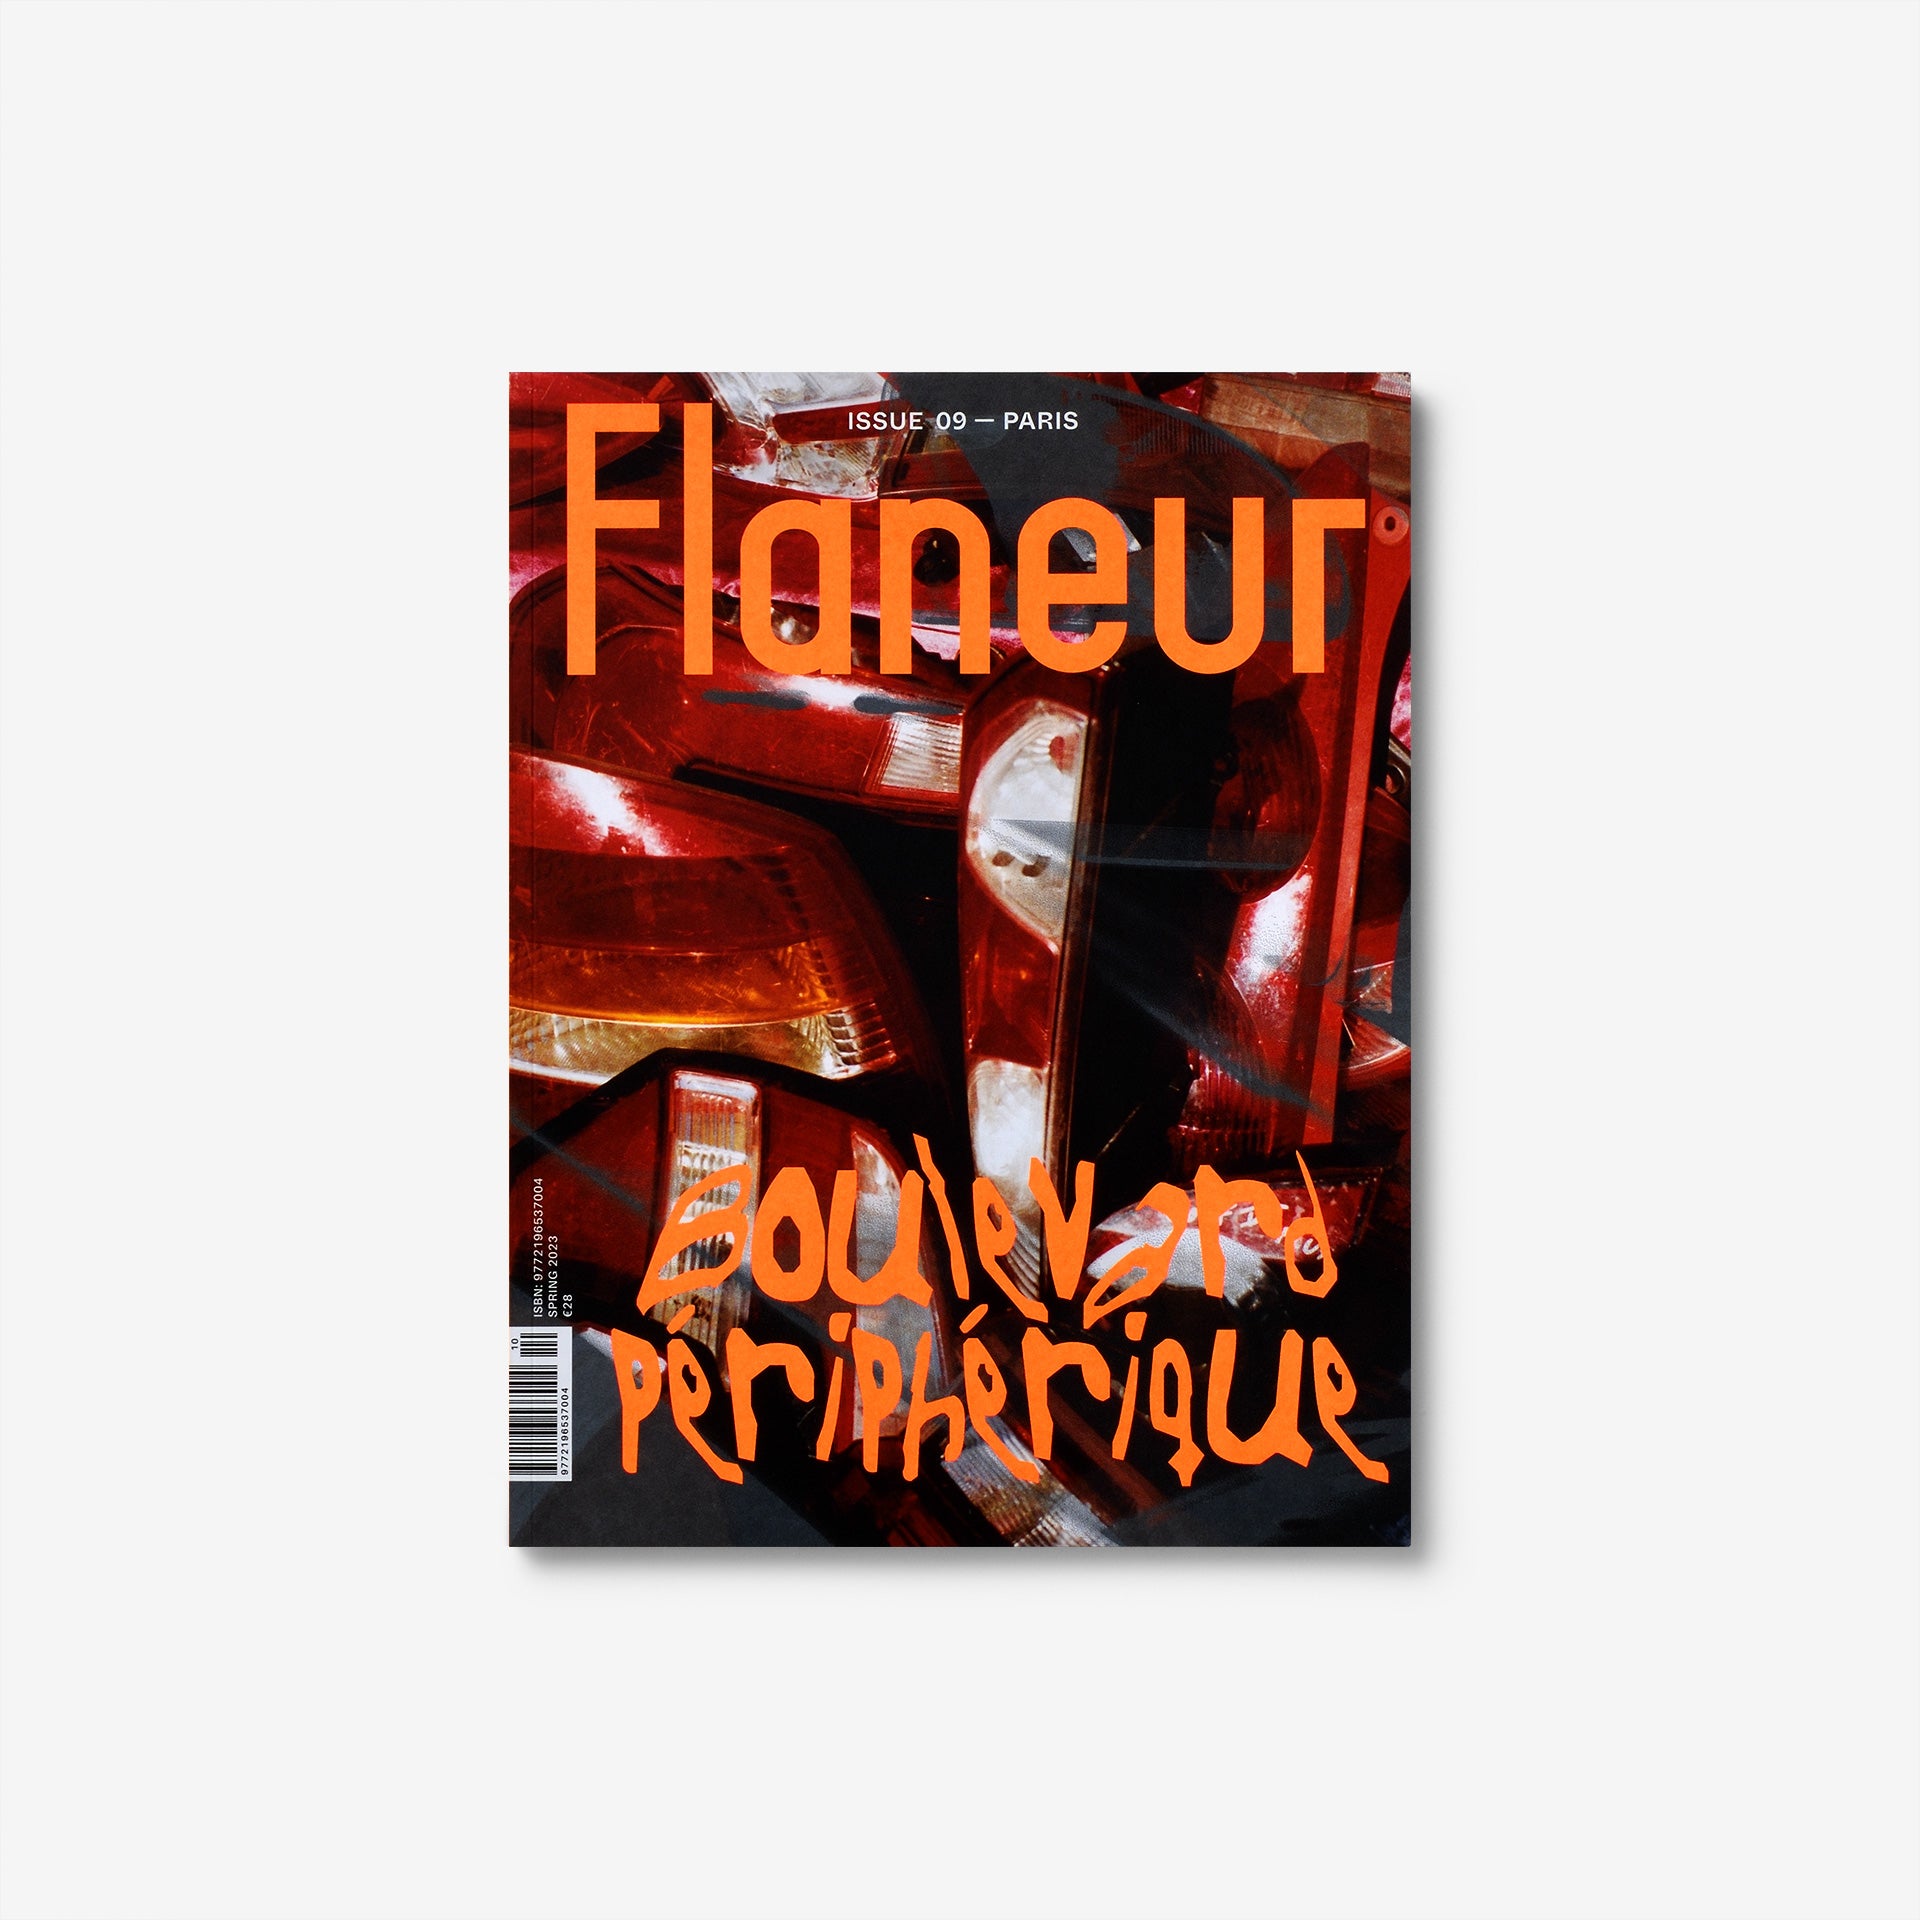 Flaneur Issue 09: Boulevard Périphérique, Paris